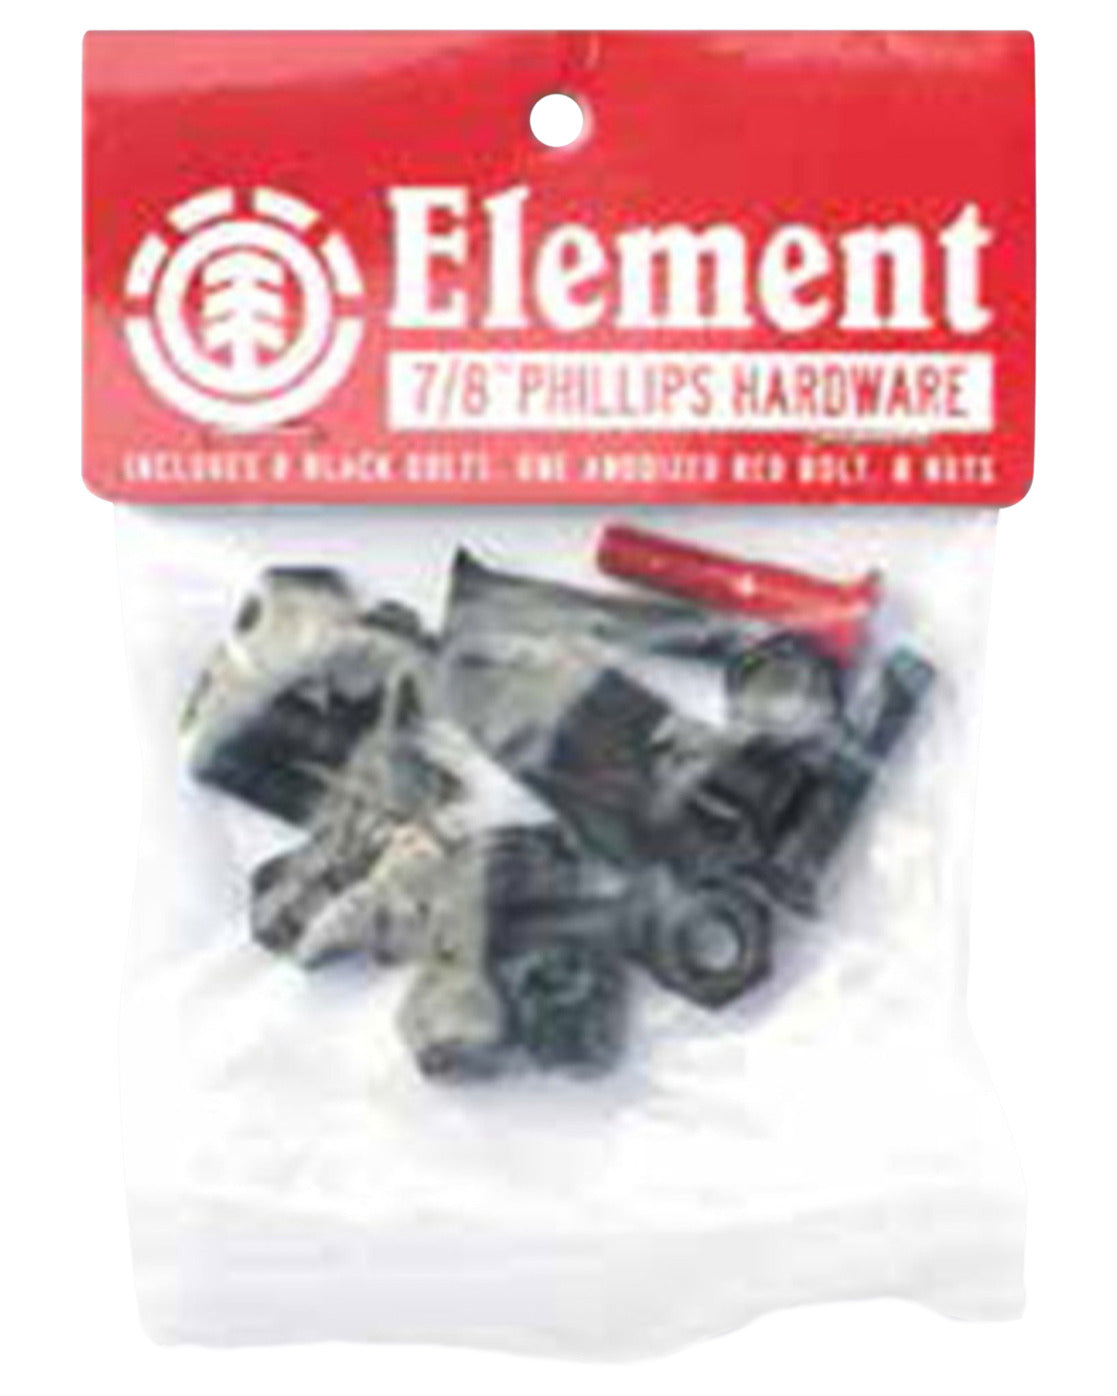 Element Phillips Hardware 1 Inch Schrauben - Black